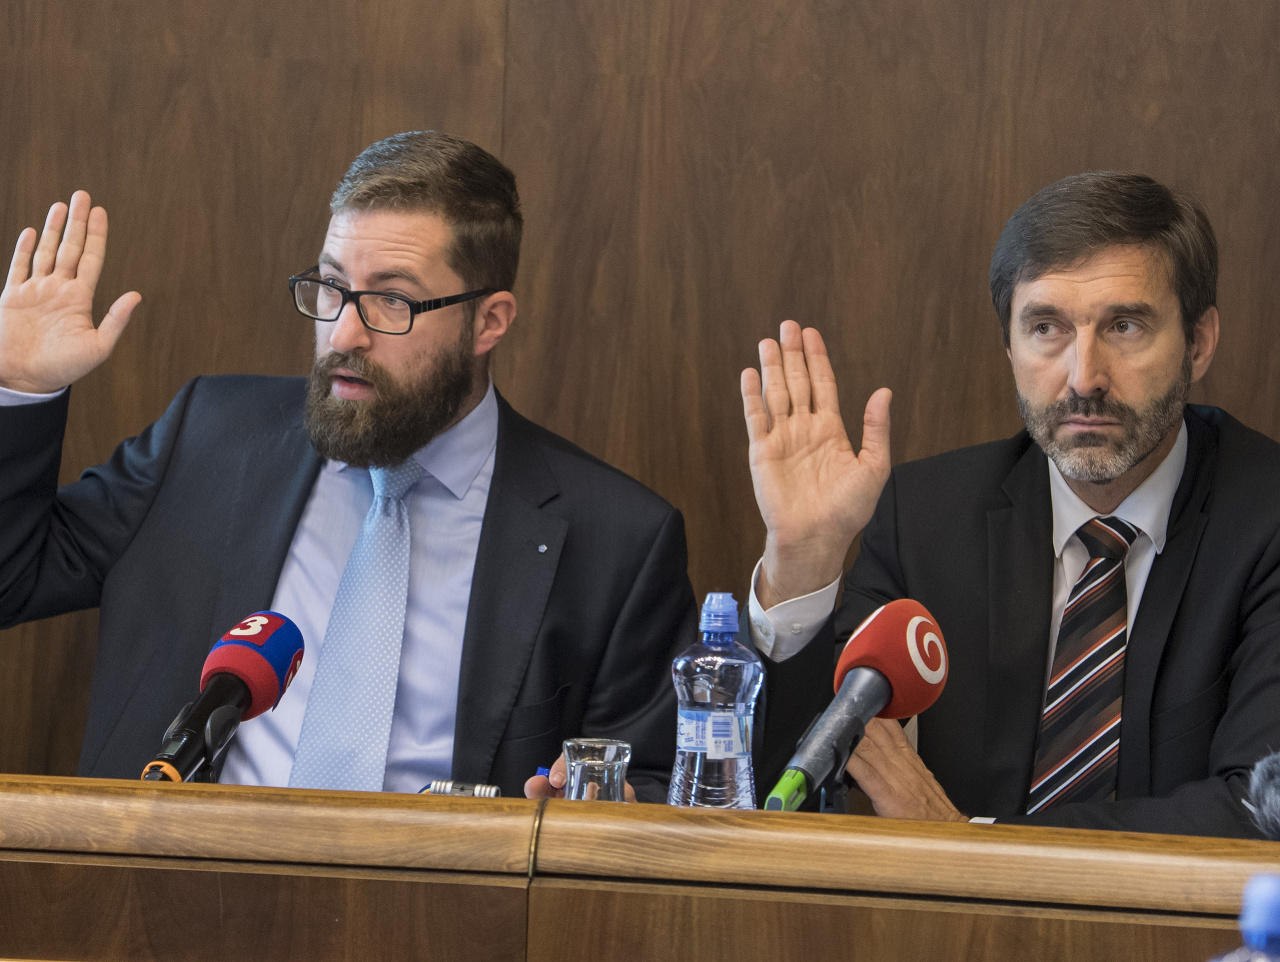 Na snímke vľavo predseda Výboru NR SR pre nezlučiteľnosť funkcií Martin Poliačik (SaS) a vpravo podpredseda výboru Juraj Blanár (SMER-SD) počas zasadnutia Výboru NR SR pre nezlučiteľnosť funkcií.